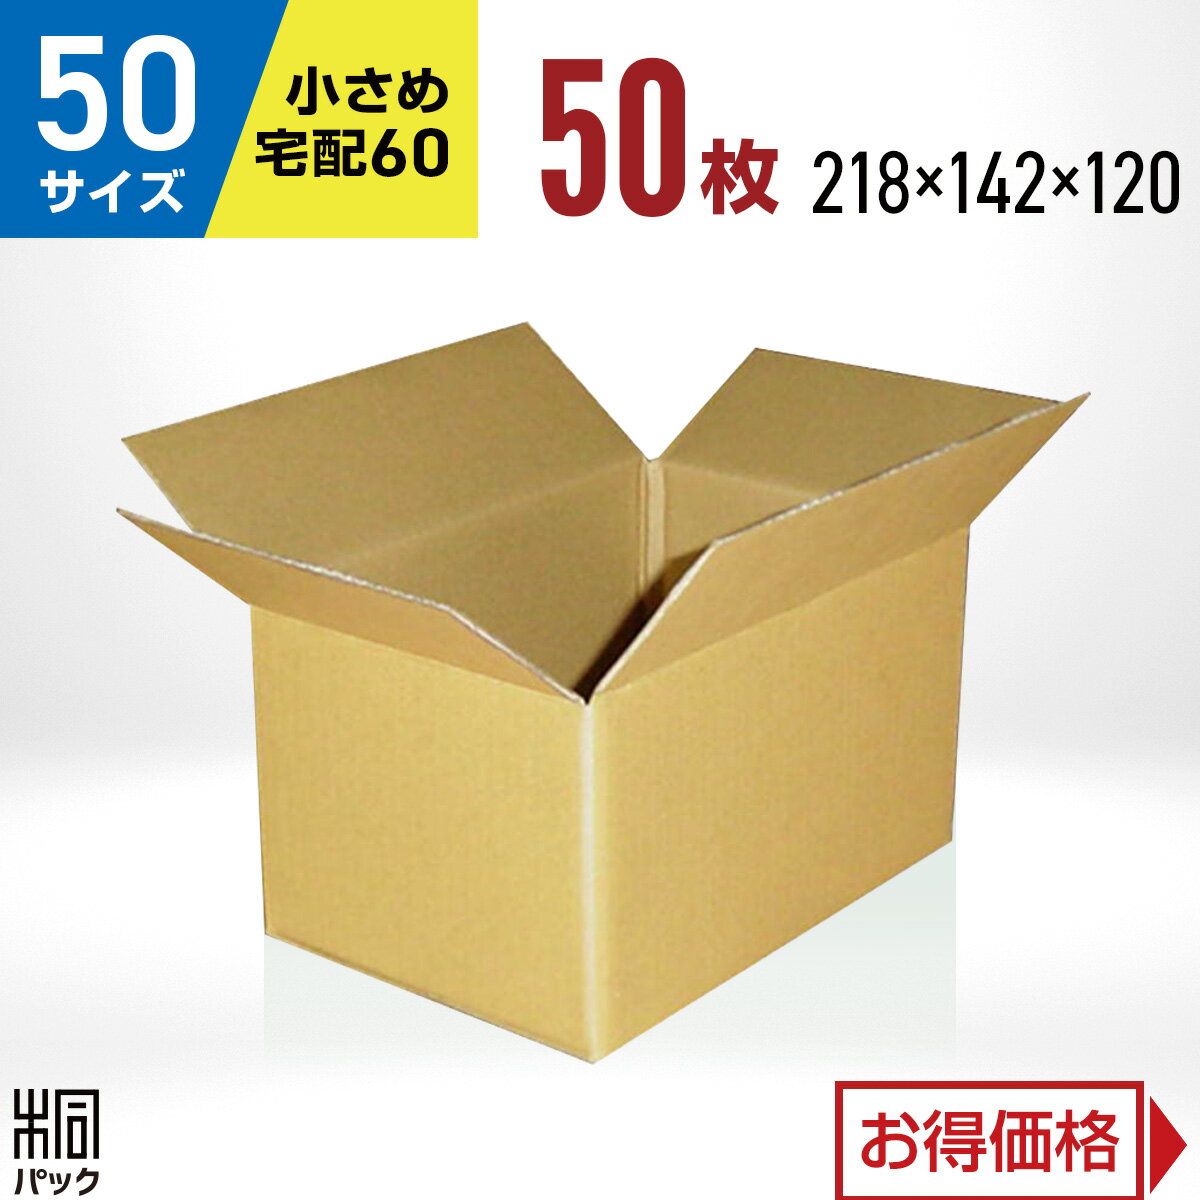 カリラ 段ボール 箱 50サイズ (宅配 60サイズ 対応) 50枚 (218x142x120) 段ボール 60 梱包 通販 資材 用 セット 日本